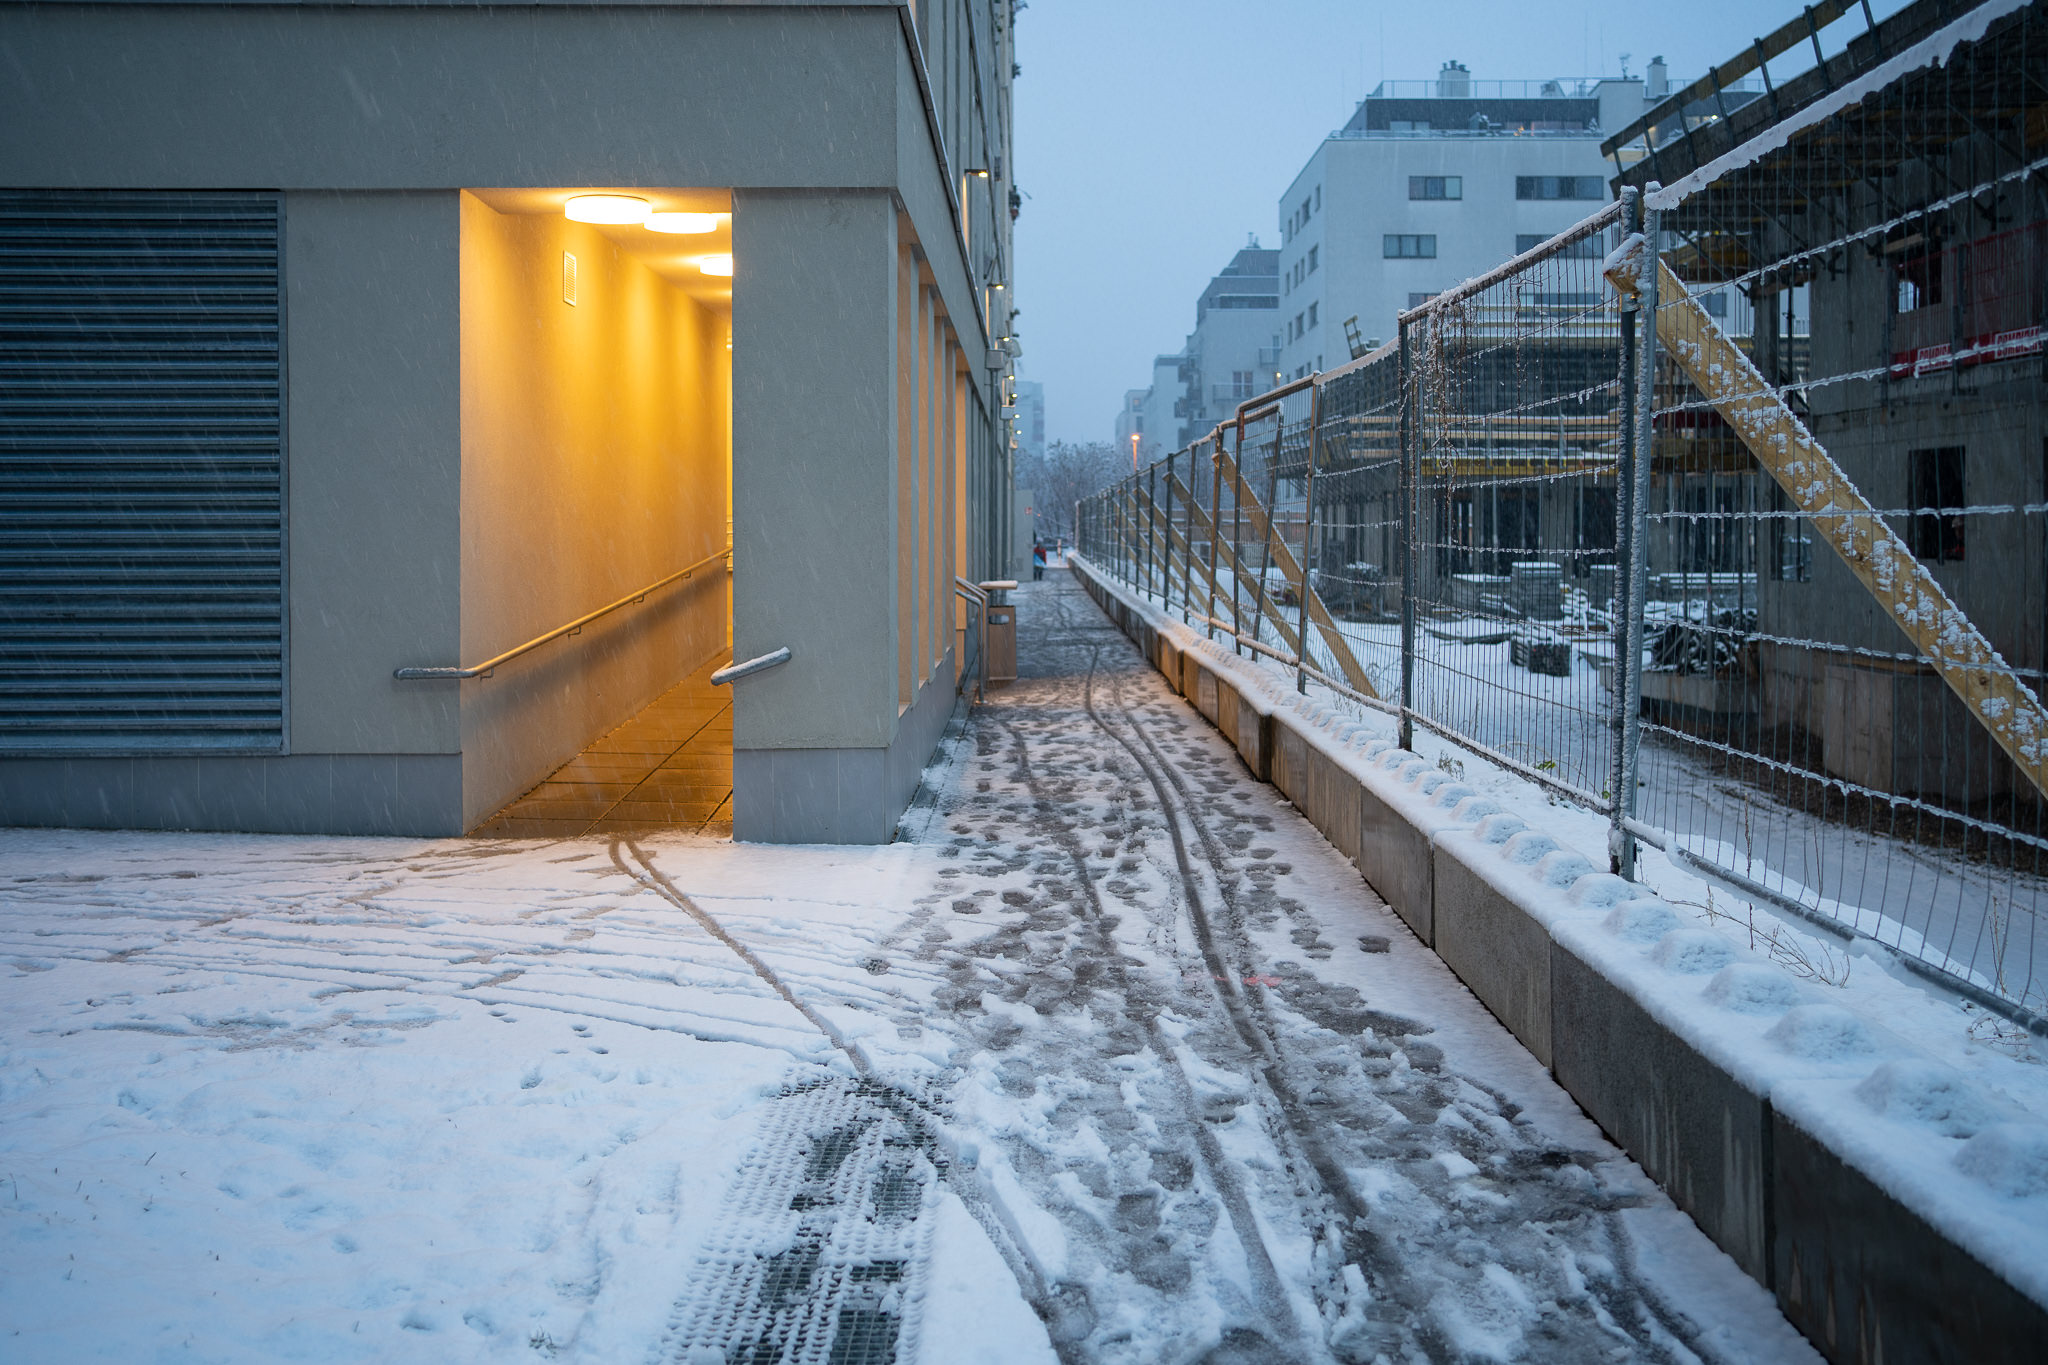 "Grätzl im Wandel" - Freie Mitte covered in Snow